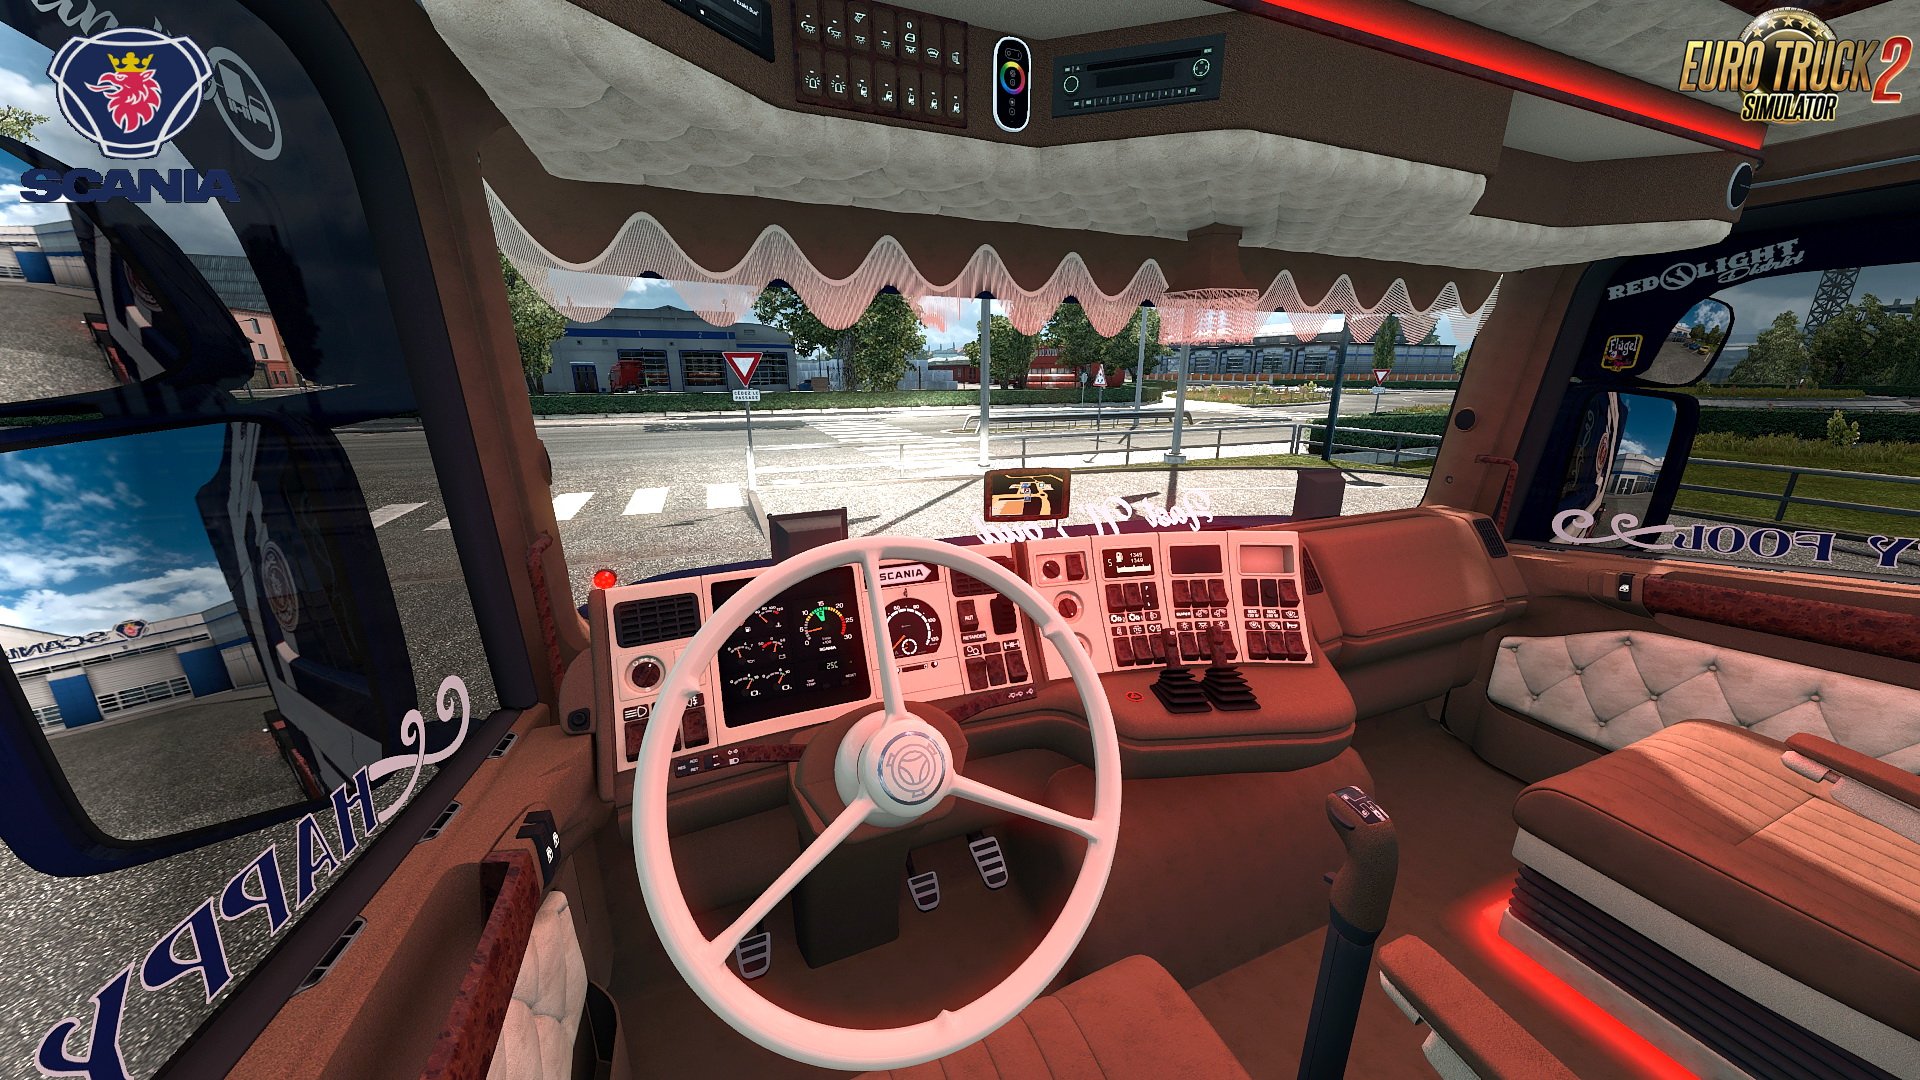 Scania T580 + Interior v1.0 by Caspian Custom Team (1.30.x) | ETS2 mods ...